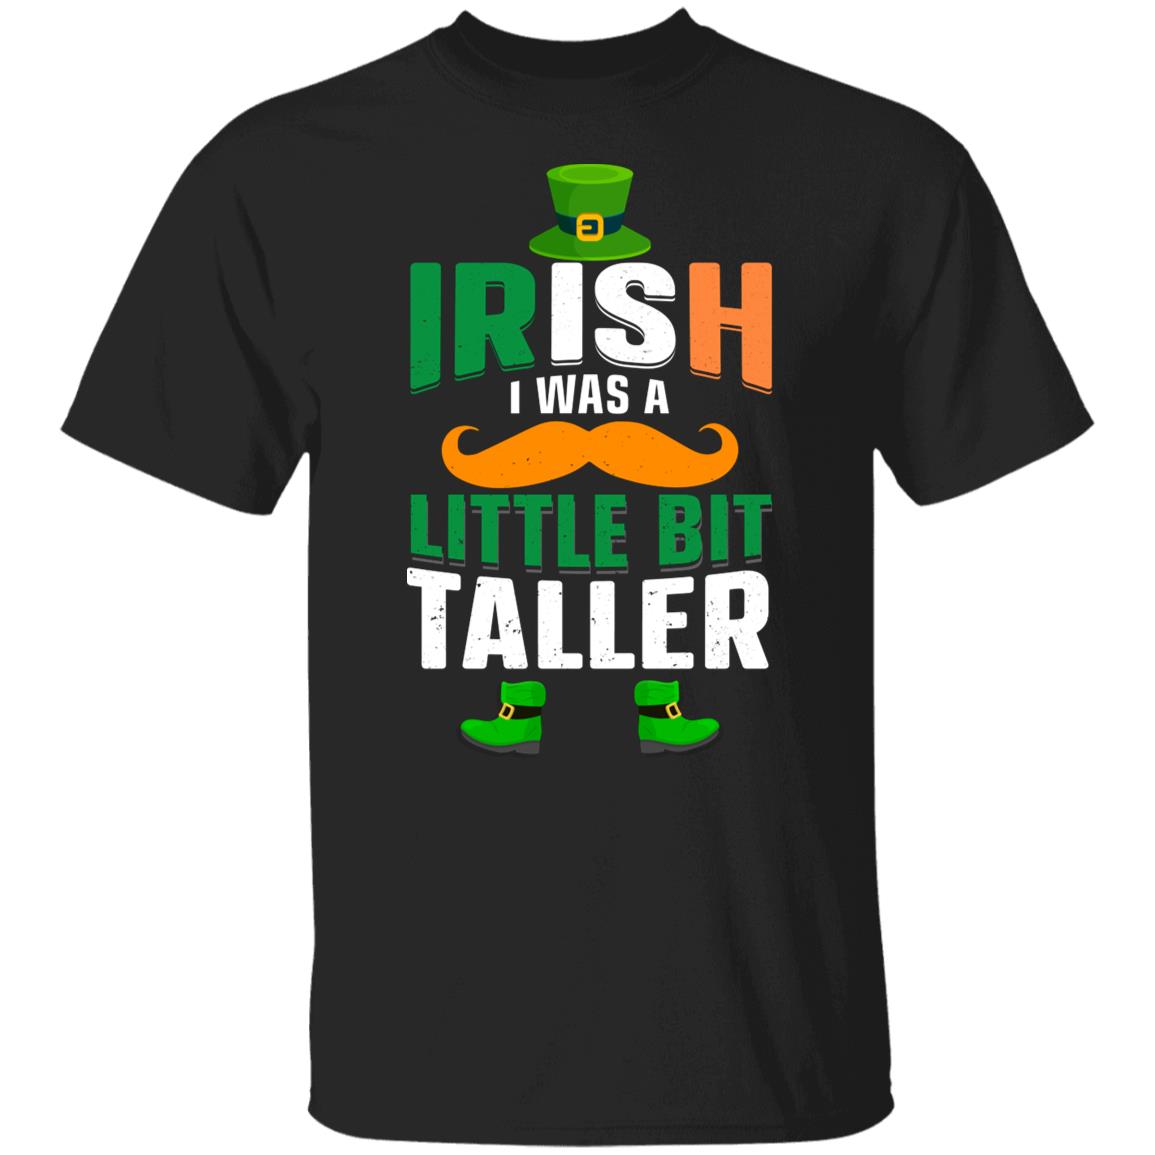 Irish I Was a Little Bit Taller Funny Shirt